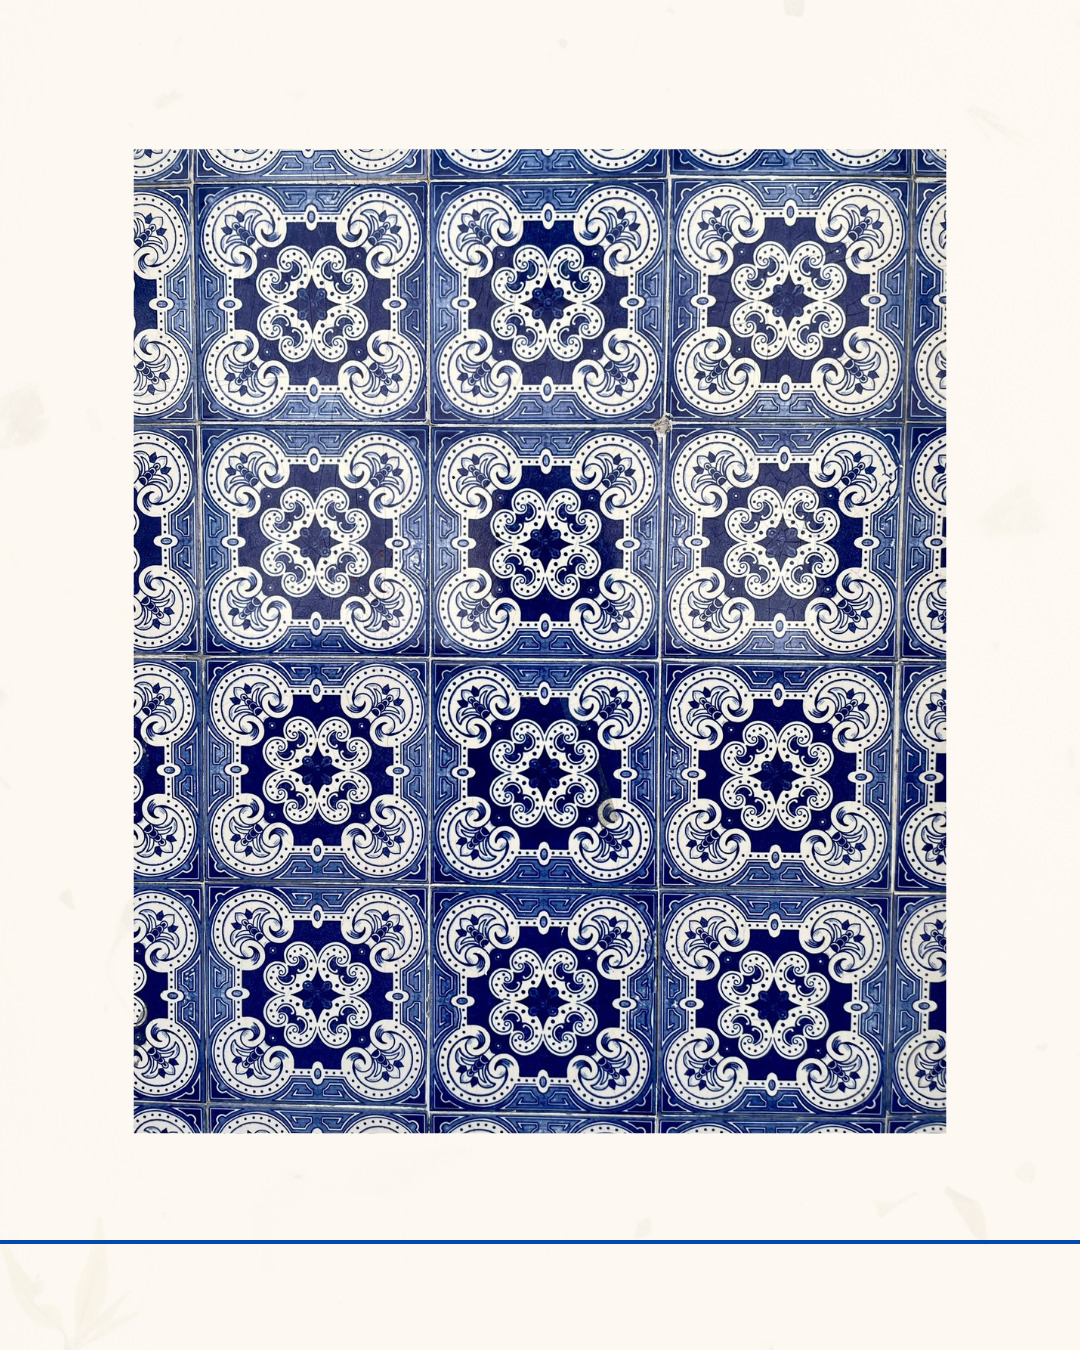 121 - L’azulejo, le trésor décoratif du Portugal